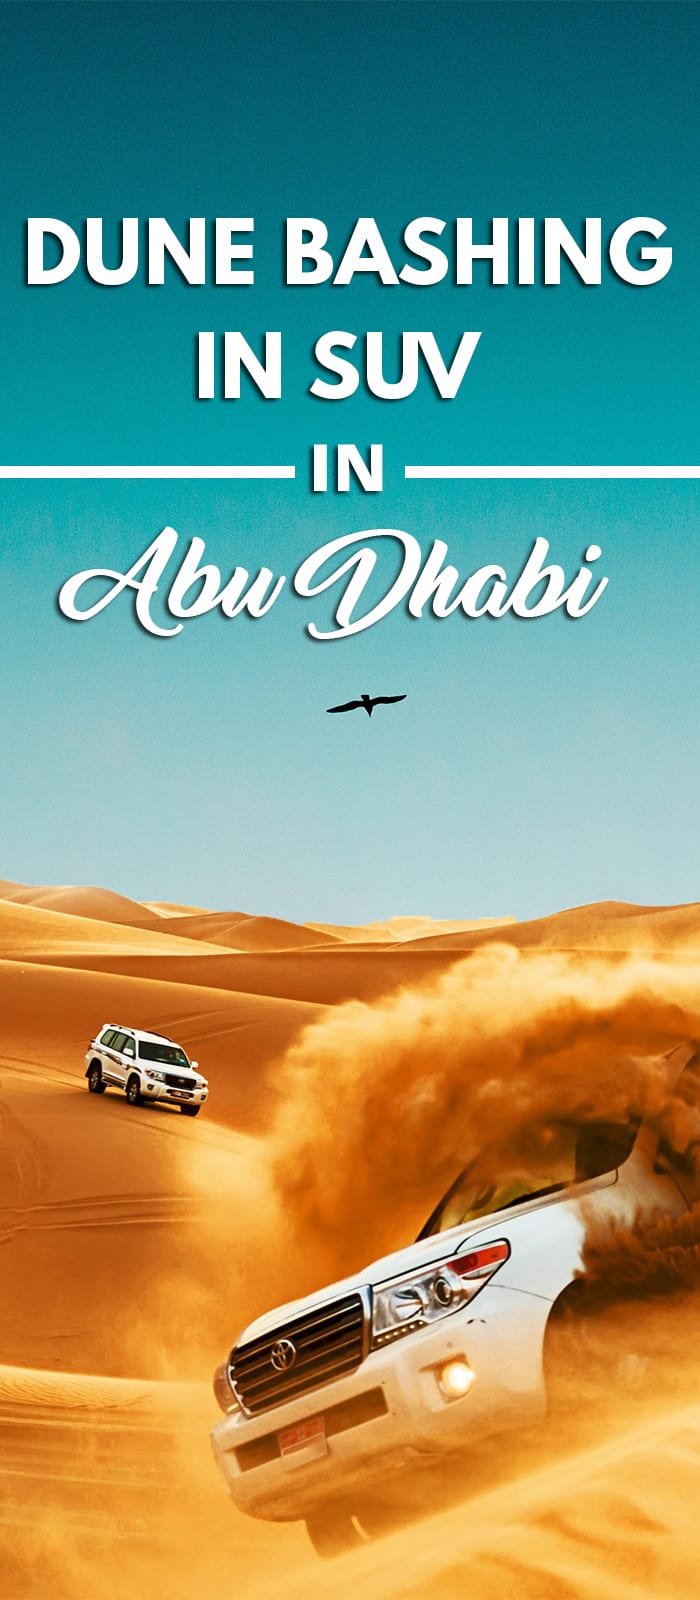 Dune Bashing in SUV & Sand boarding in Abu Dhabi dubai desert safari